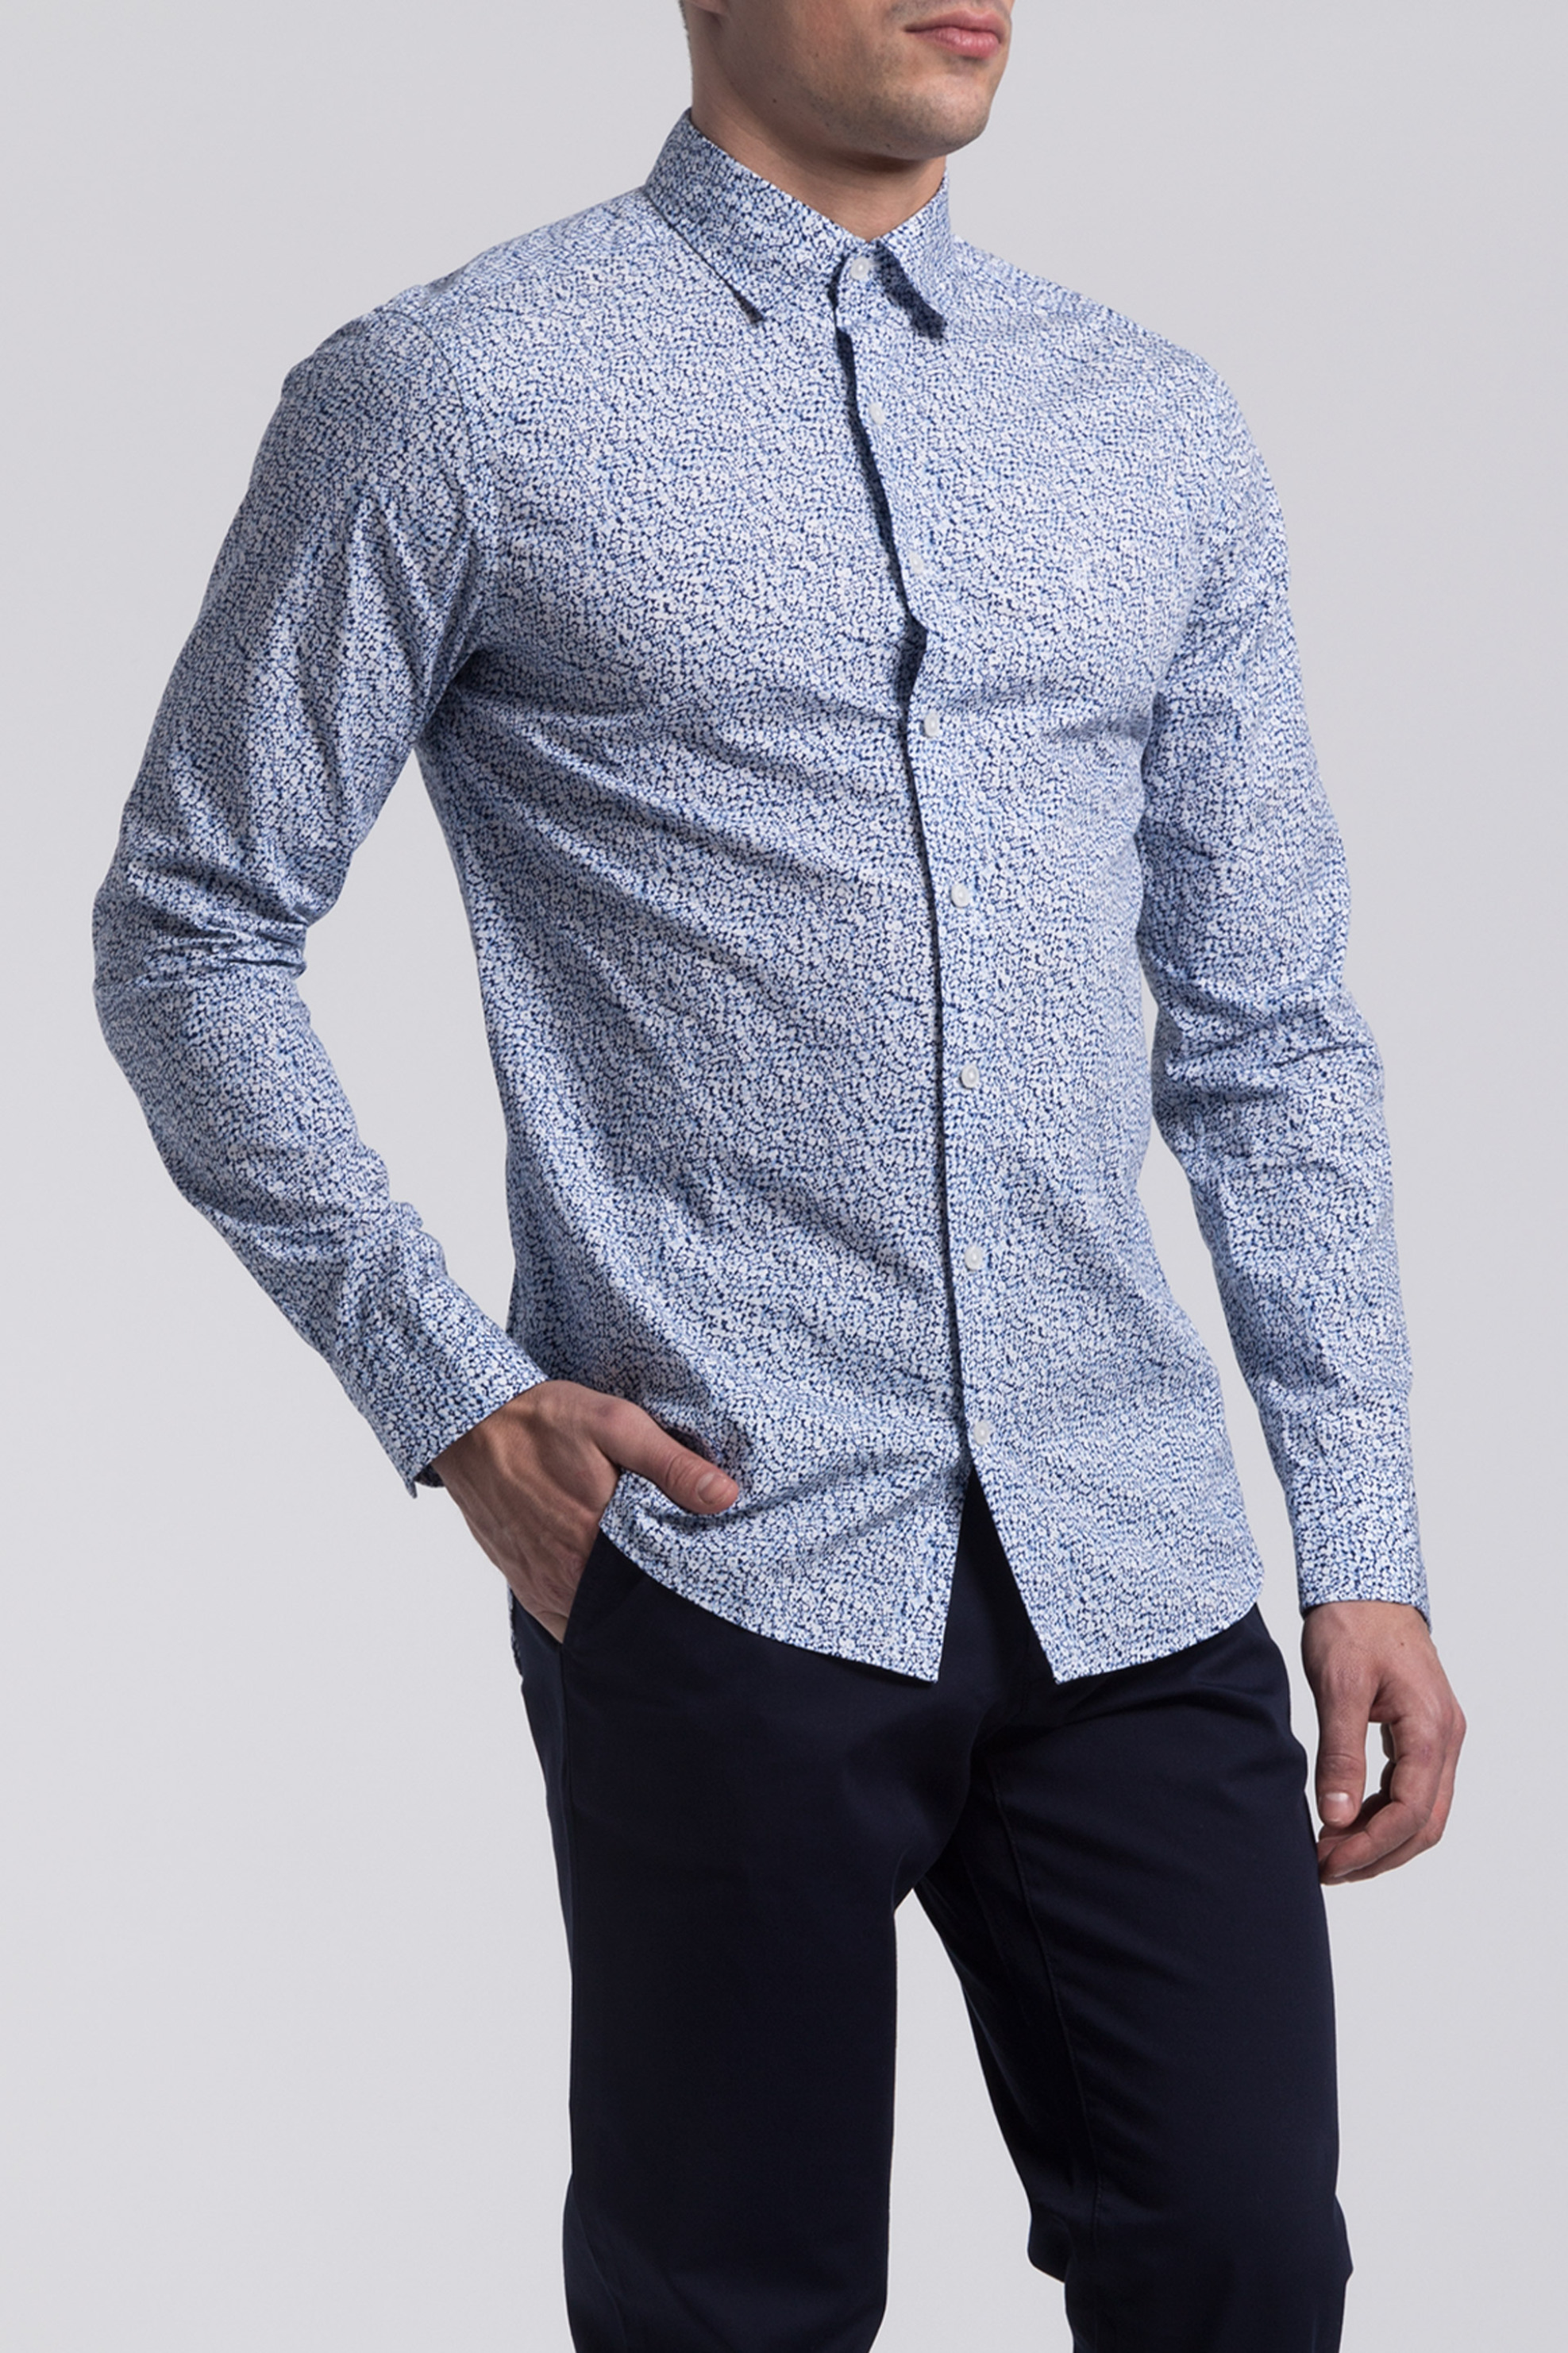 Άνδρας > ΡΟΥΧΑ > Πουκάμισα > Casual Ανδρικό πουκάμισο Gant - 3002219 Γαλάζιο